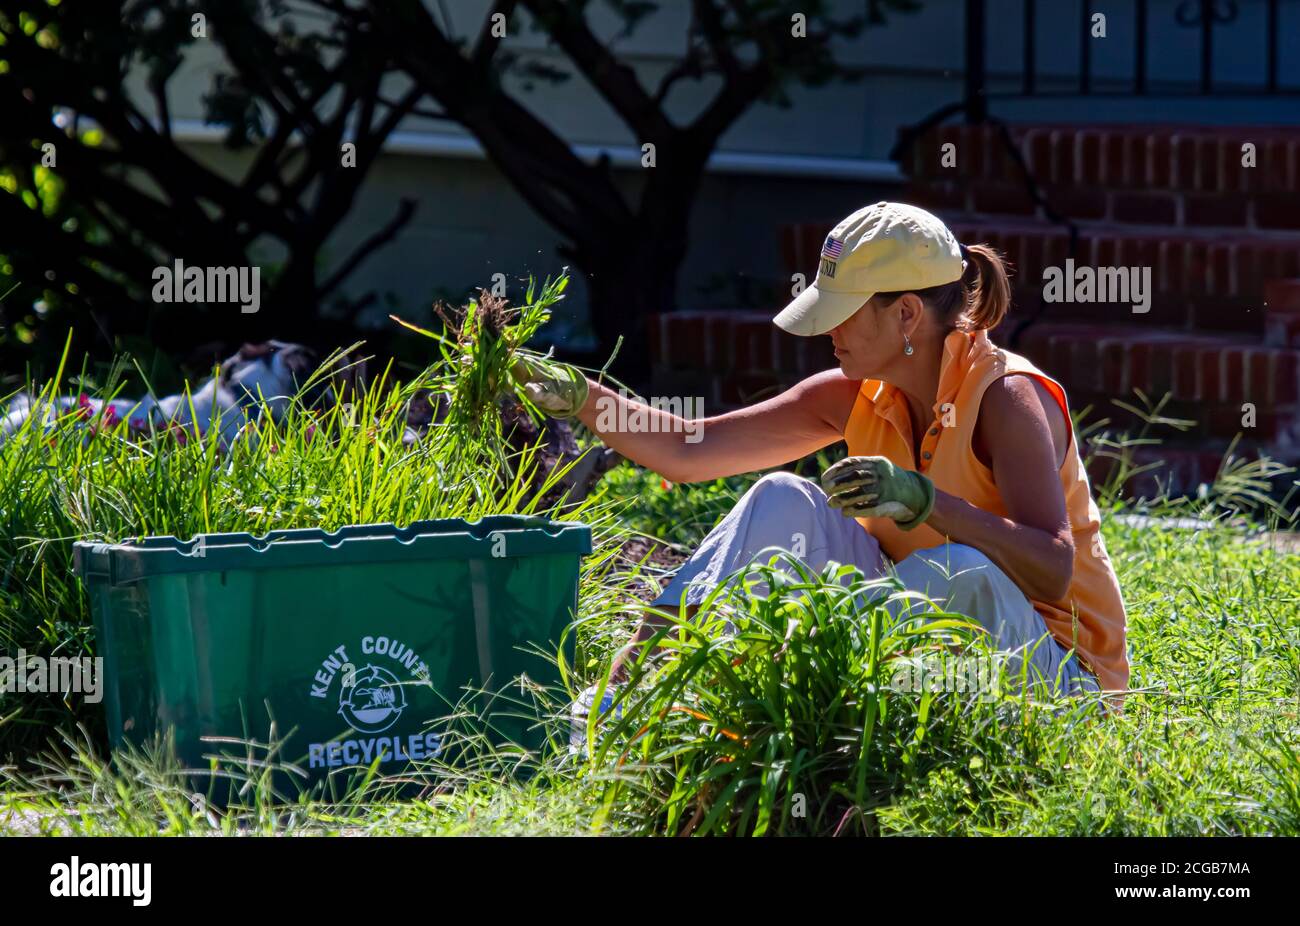 Chestertown, MD, USA 08/30/2020 :EINE Frau mit Hut sitzt auf Gras und zieht Unkraut aus ihrem Vorgarten mit landwirtschaftlichen Handschuhen. Sie collec Stockfoto